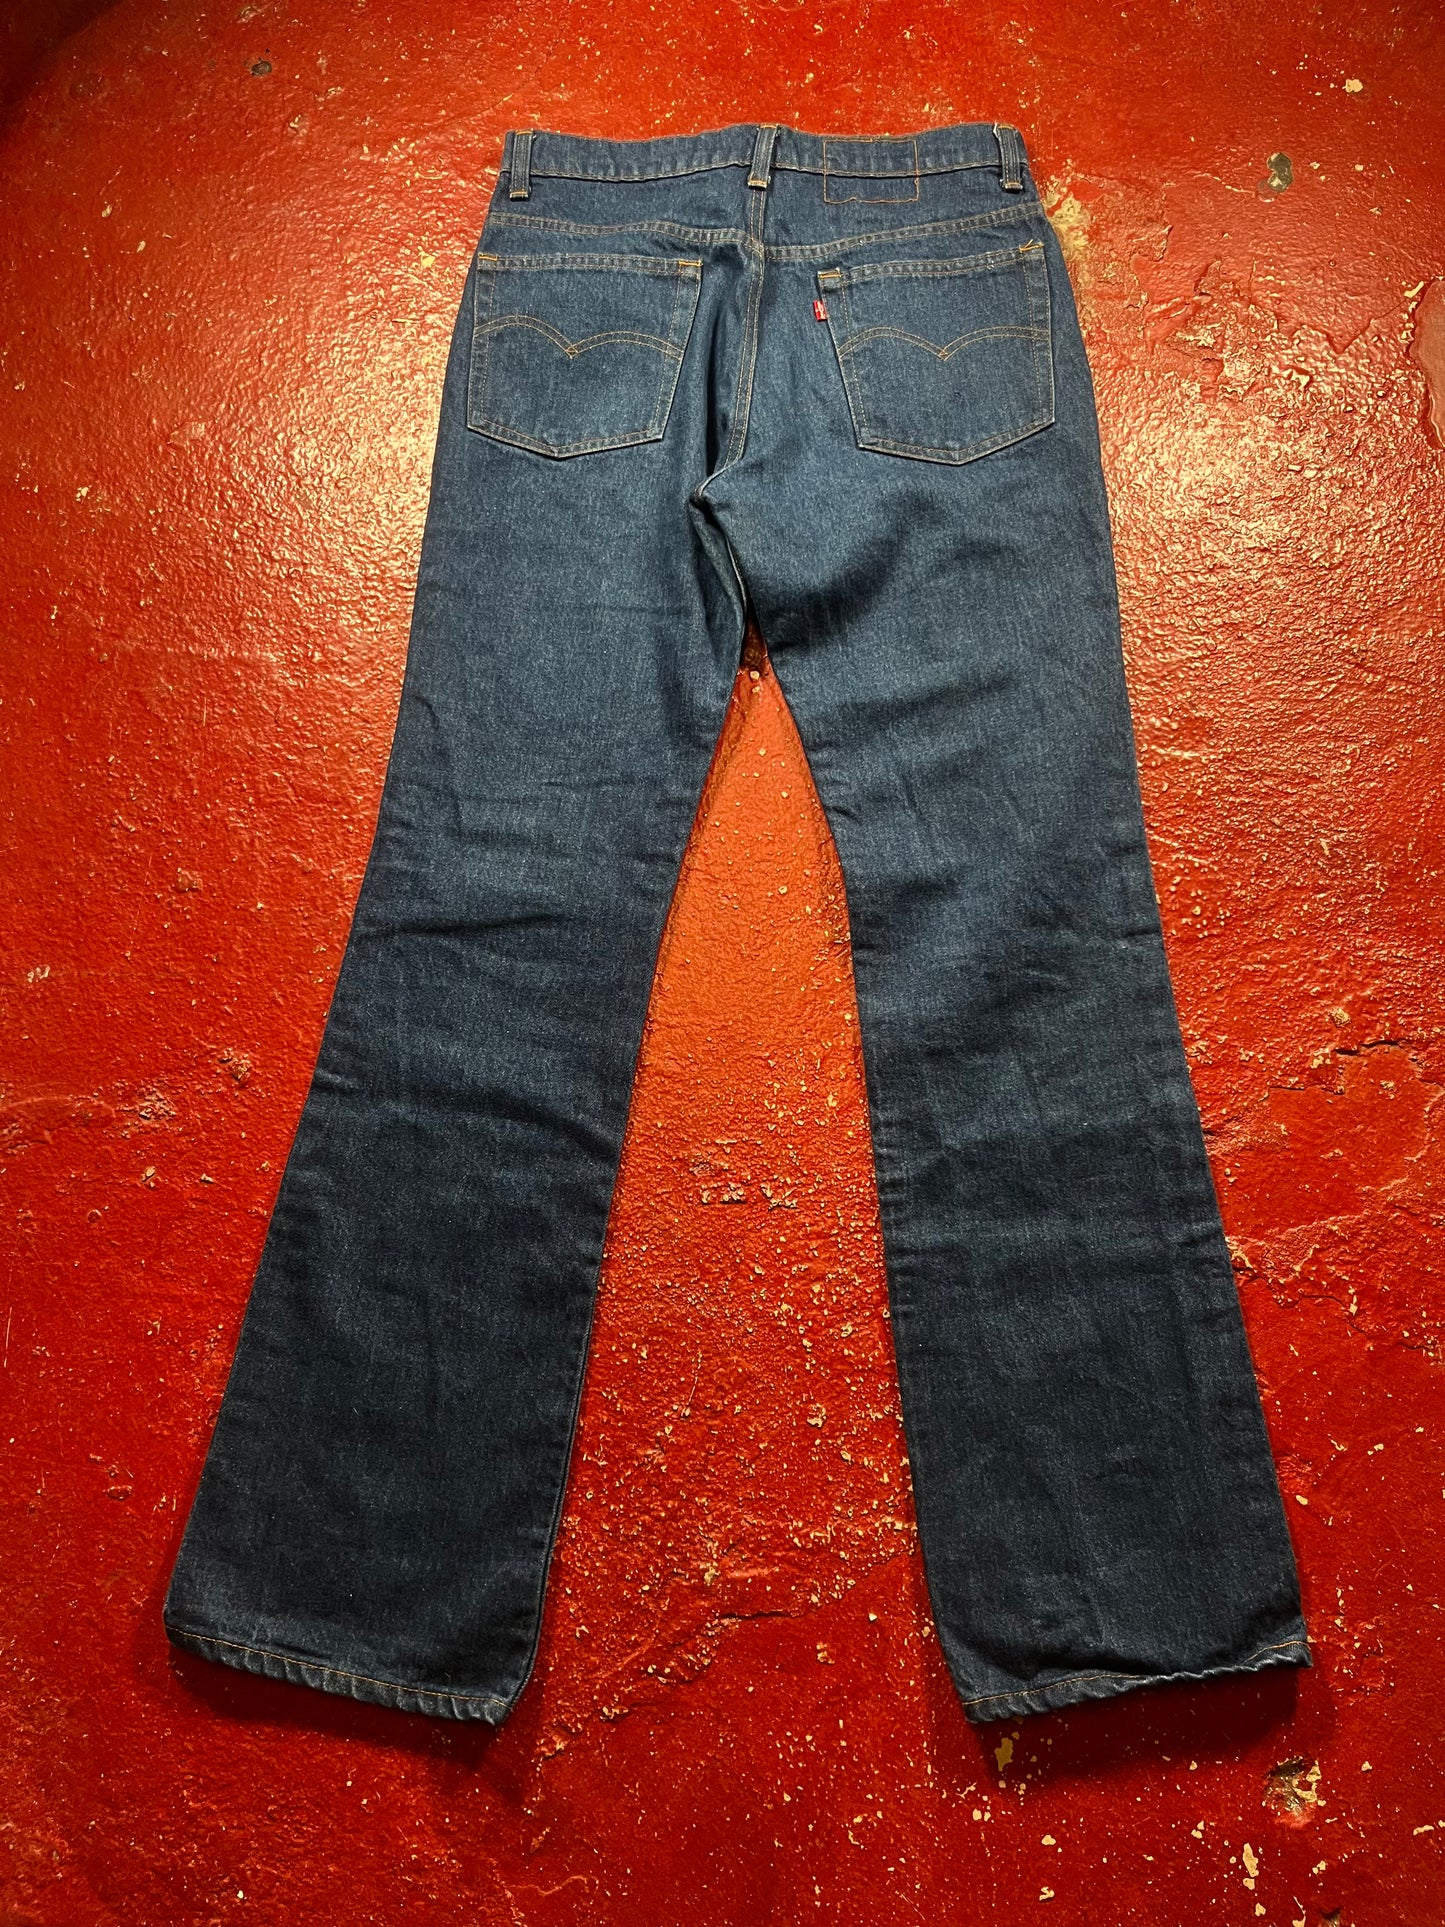 80s Levis 517 Jeans (33 Waist)